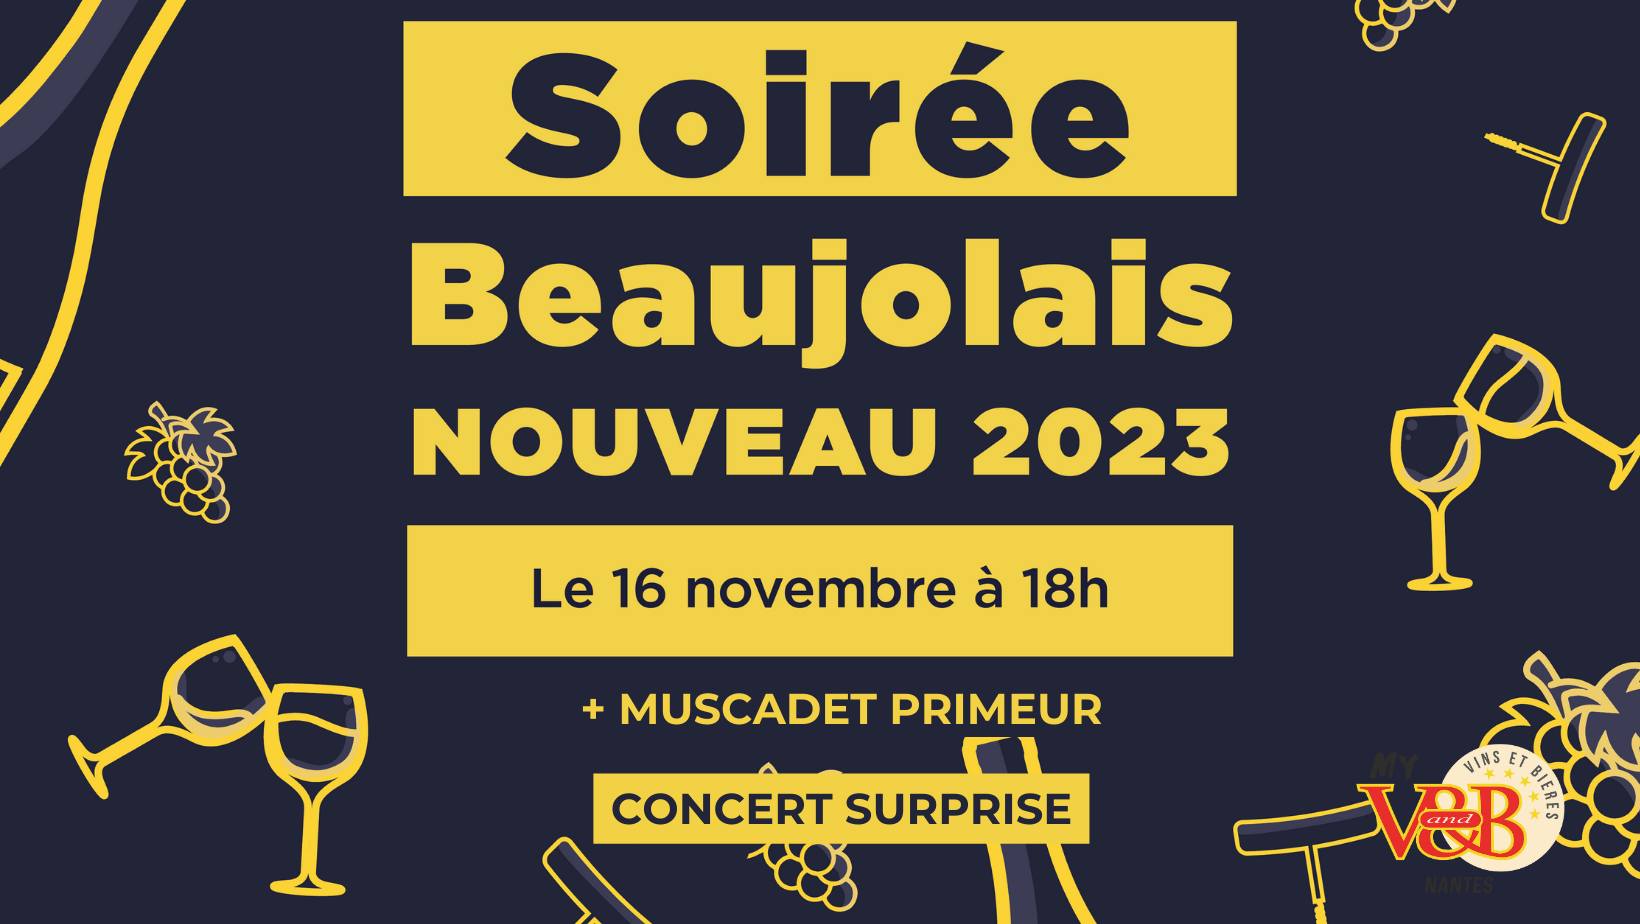 Beaujolais Nouveau Nantes Est V&B